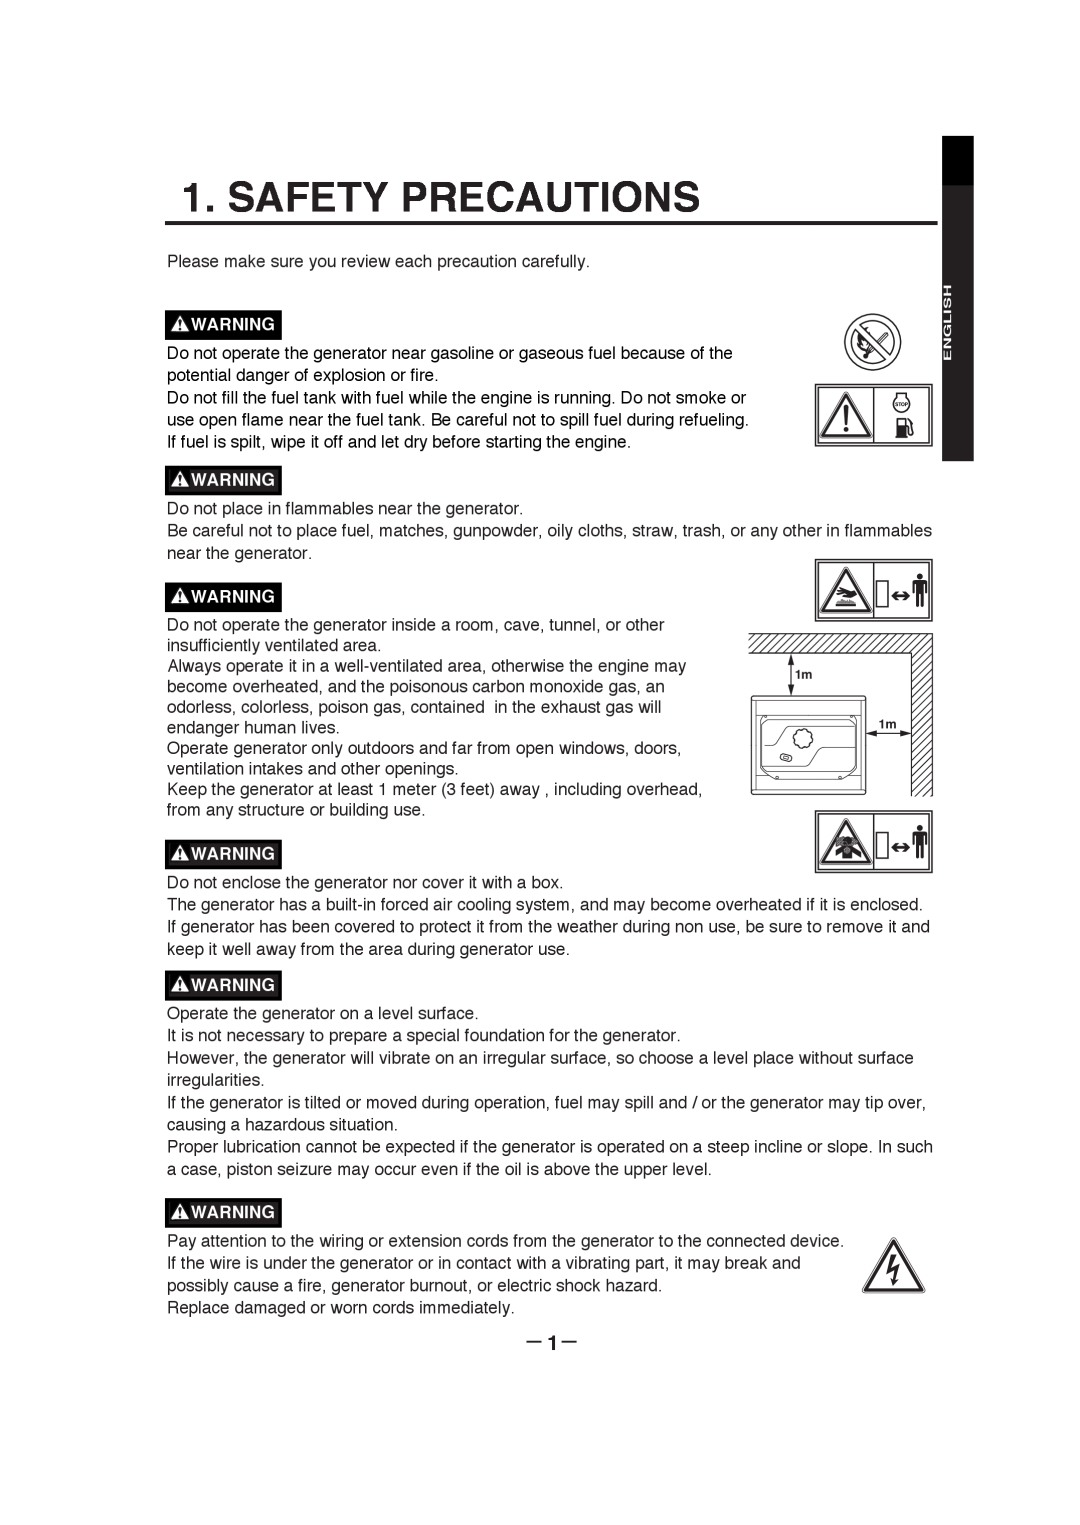 Subaru RGX3000, RGX7800, RGX3800, RGX5100, RGX7100 manual Safety Precautions, － 1－, English 